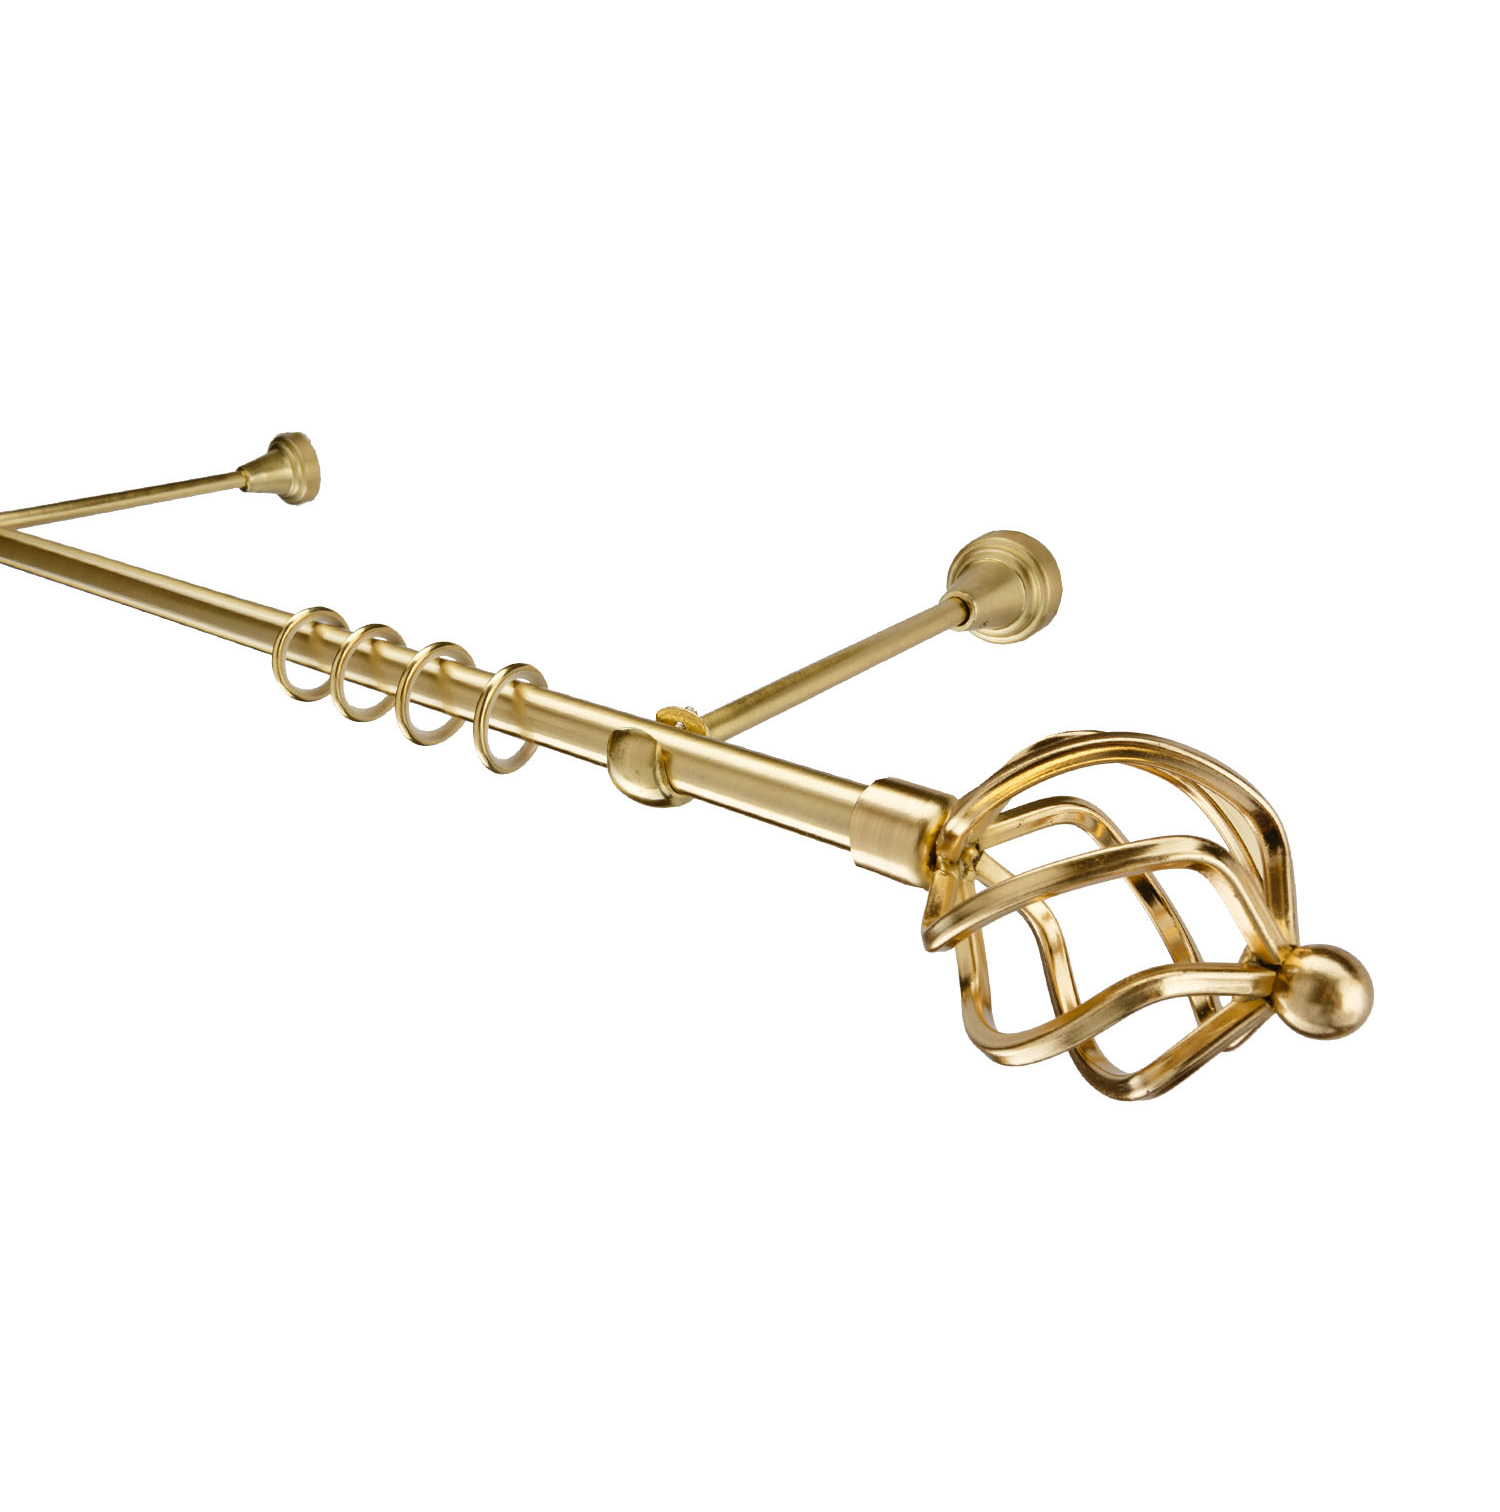 Металлический карниз для штор Солярис, однорядный 16 мм, золото, гладкая штанга, длина 140 см